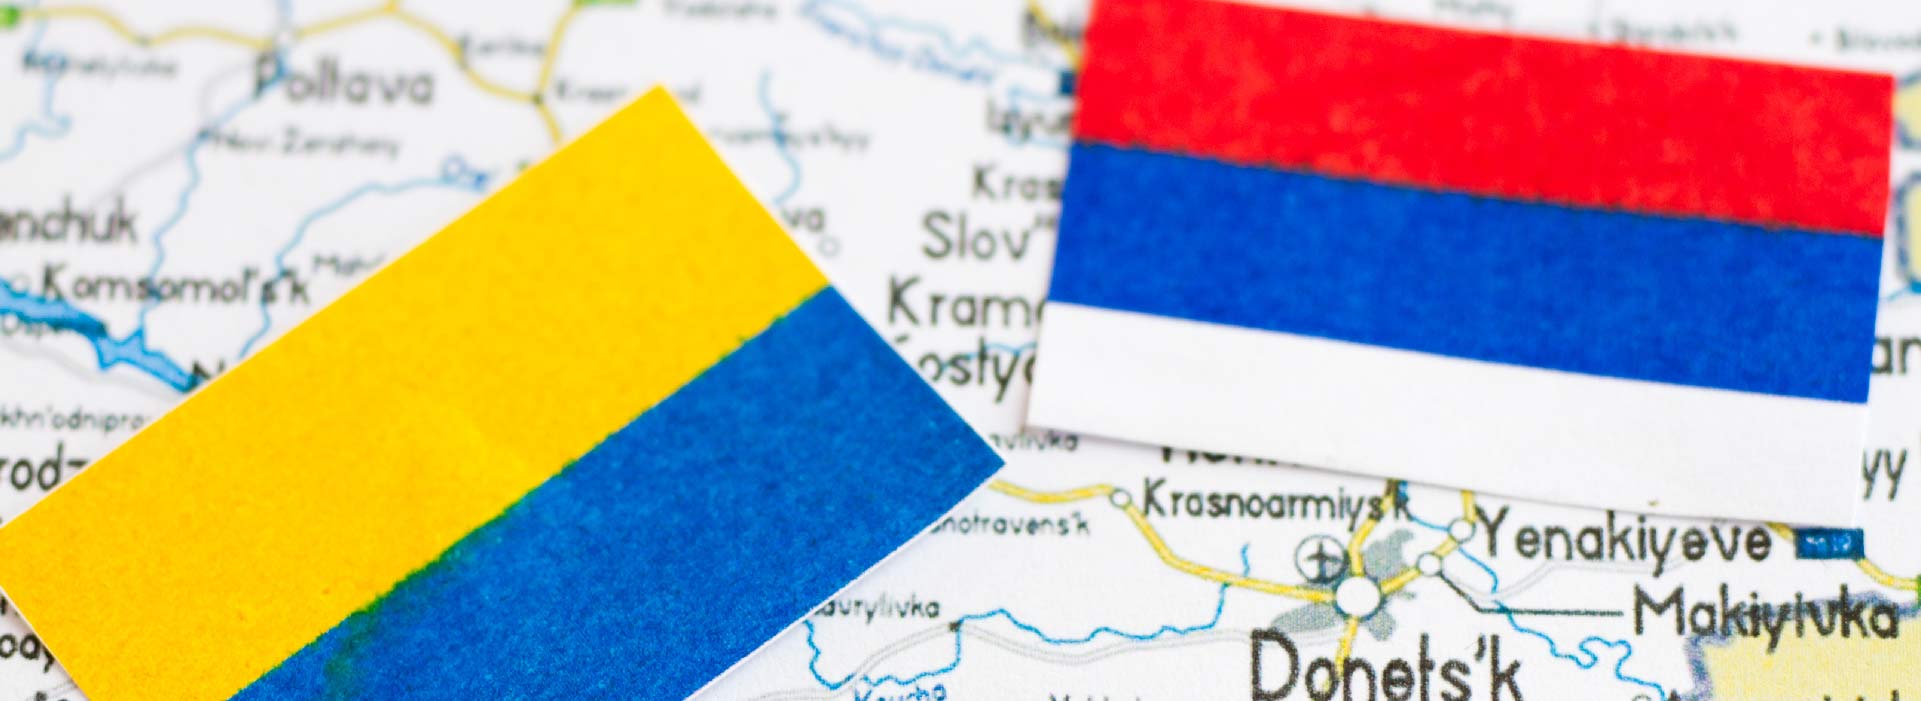 Imagem das bandeiras da Rússia e Ucrânia